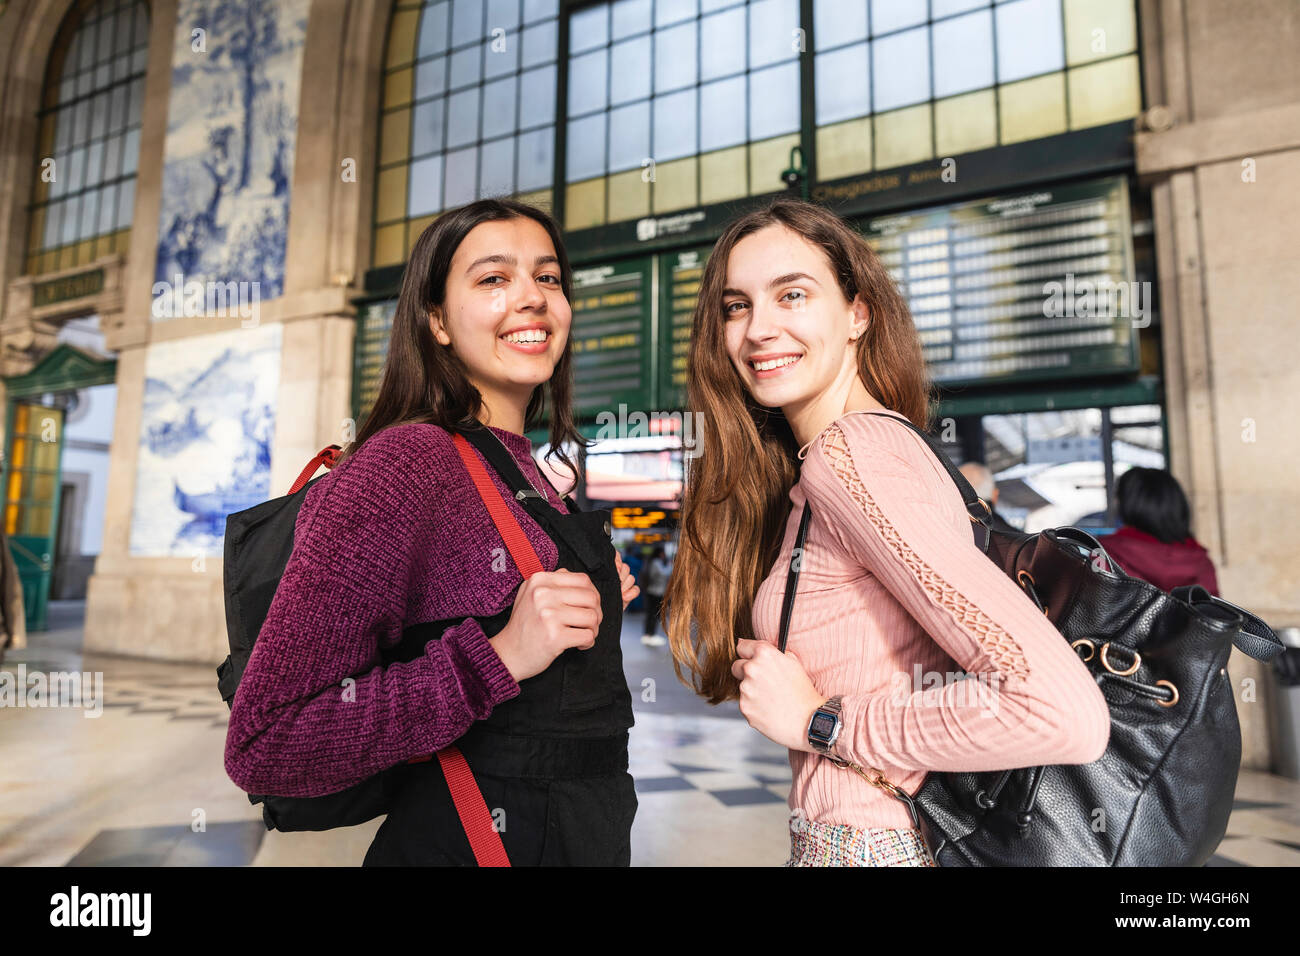 Portrait de deux jeunes femmes avec des sacs à dos souriant debout en face de bâtiment de station, Porto, Portugal Banque D'Images